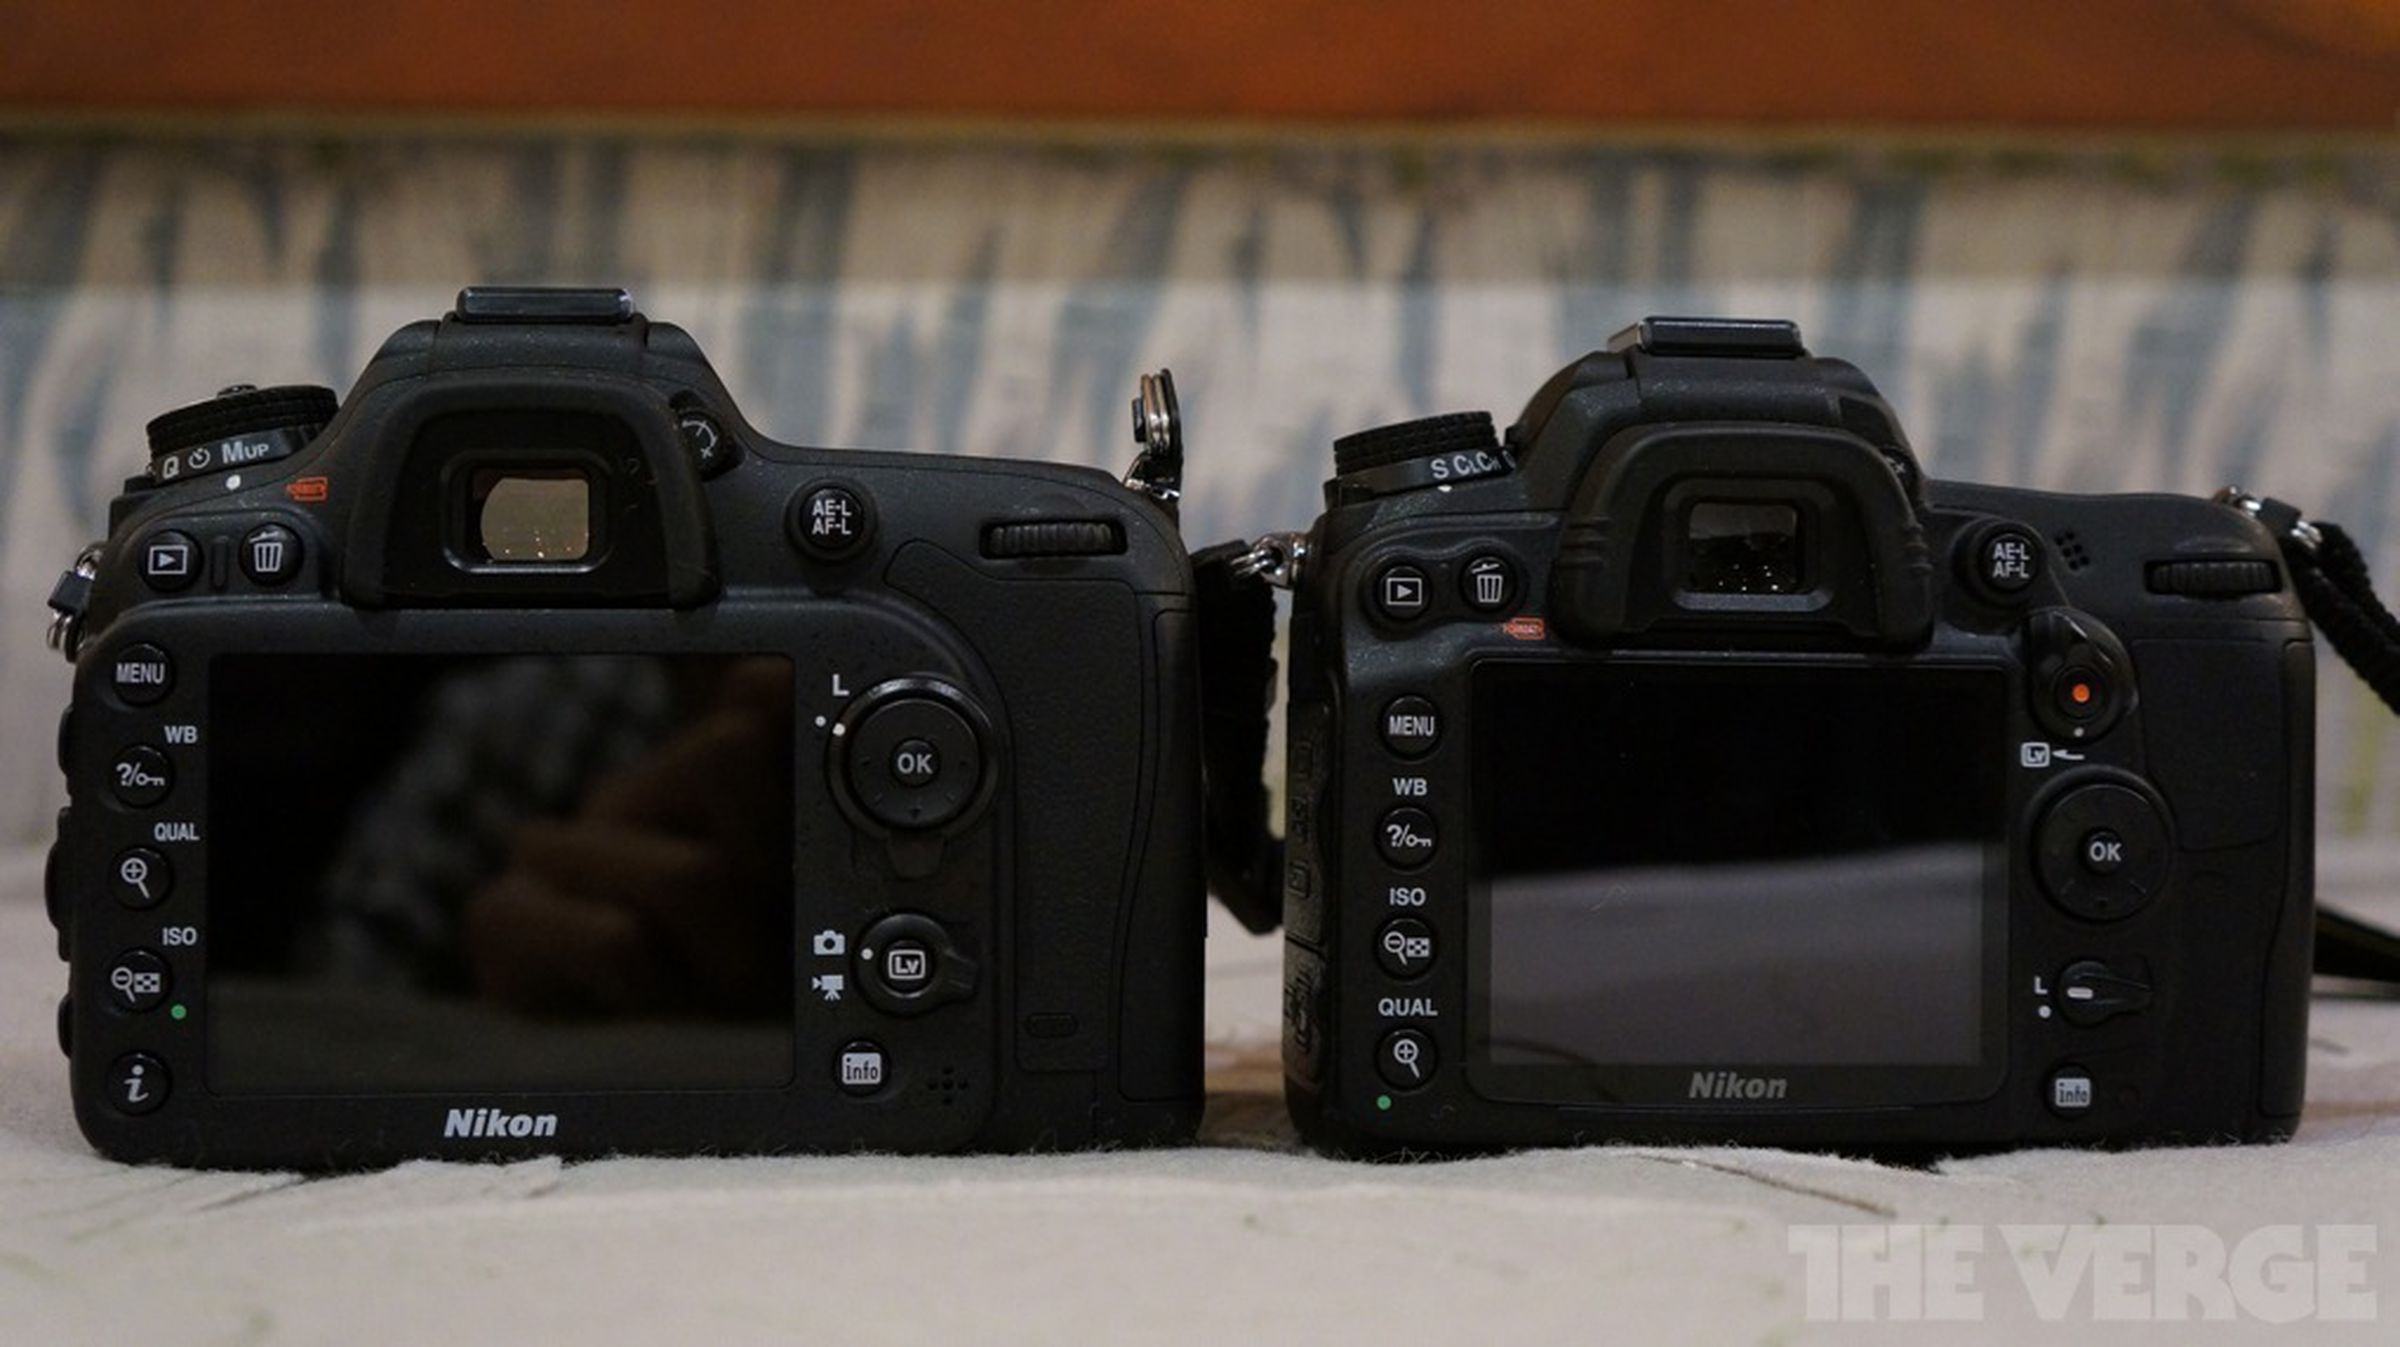 Nikon D7100 hands-on photos